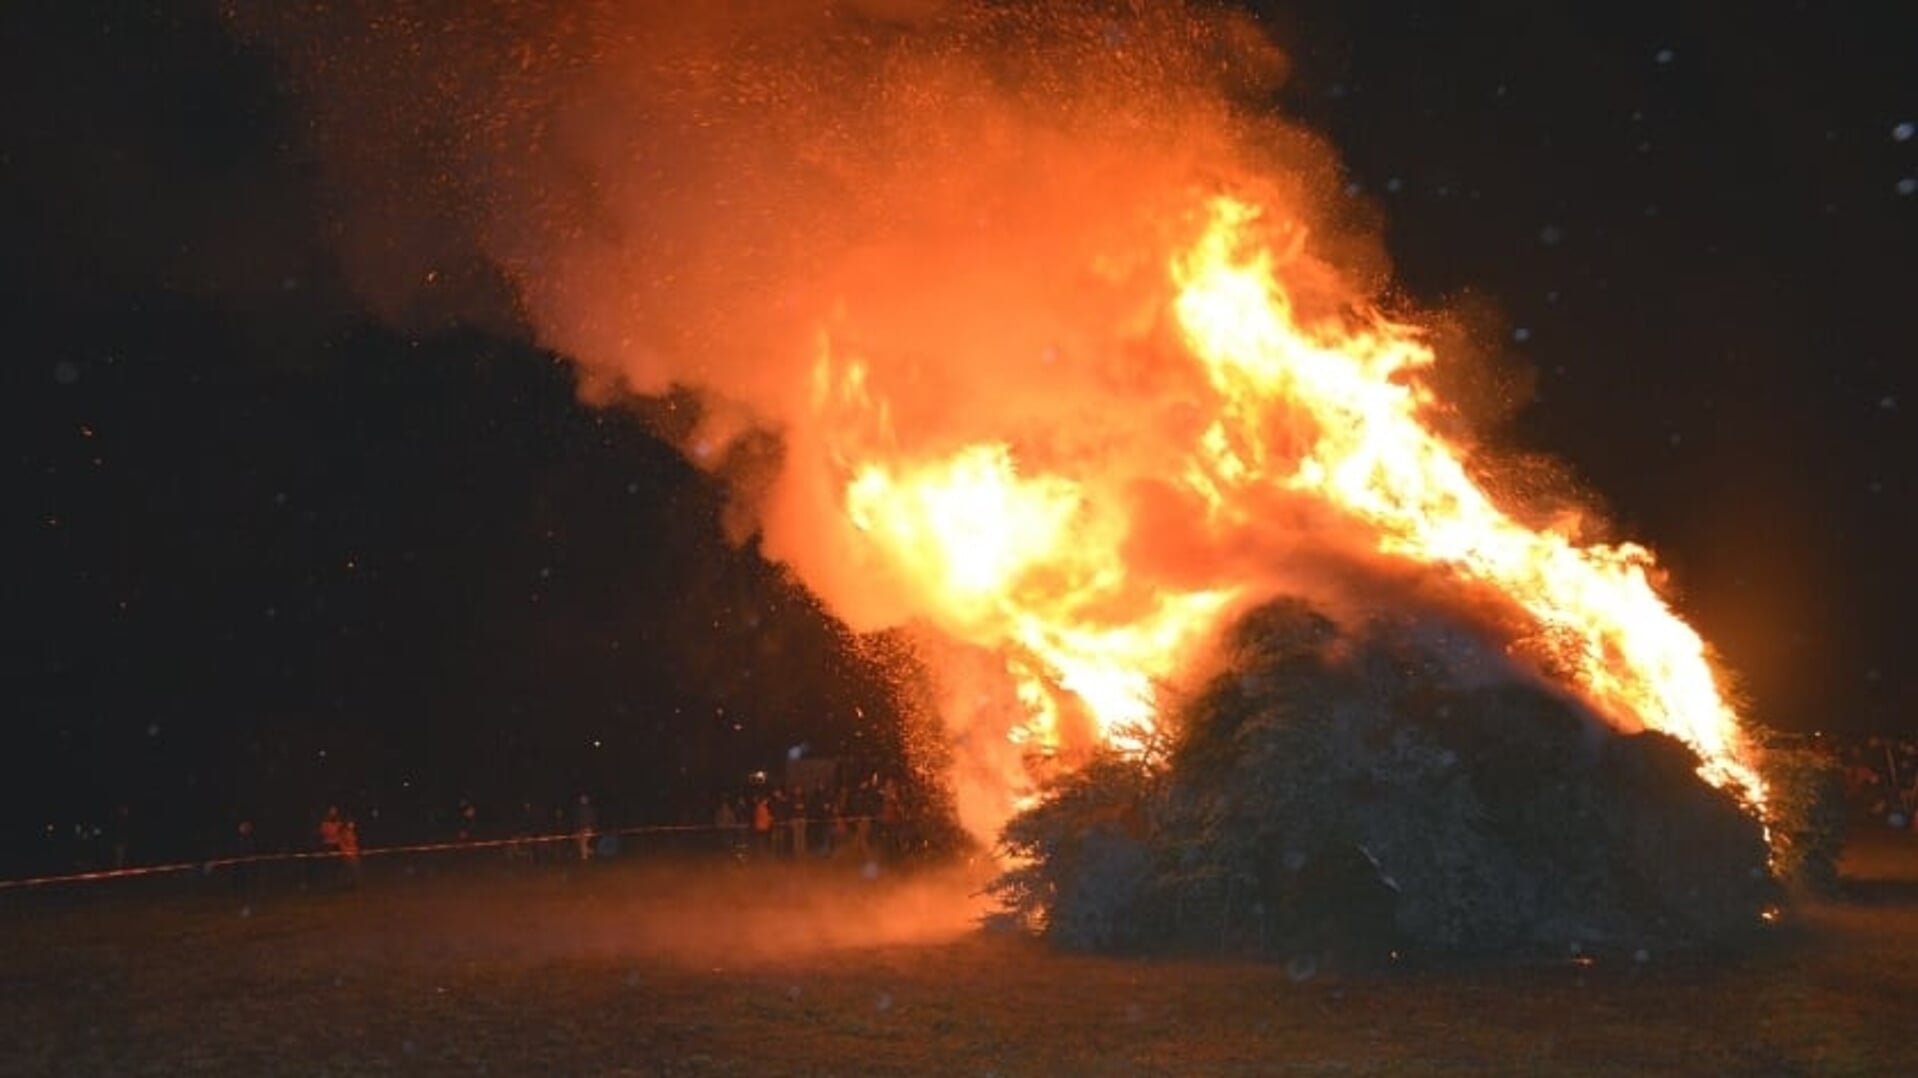 Kerstboomverbranding bij de familie van Erp in Berghem.